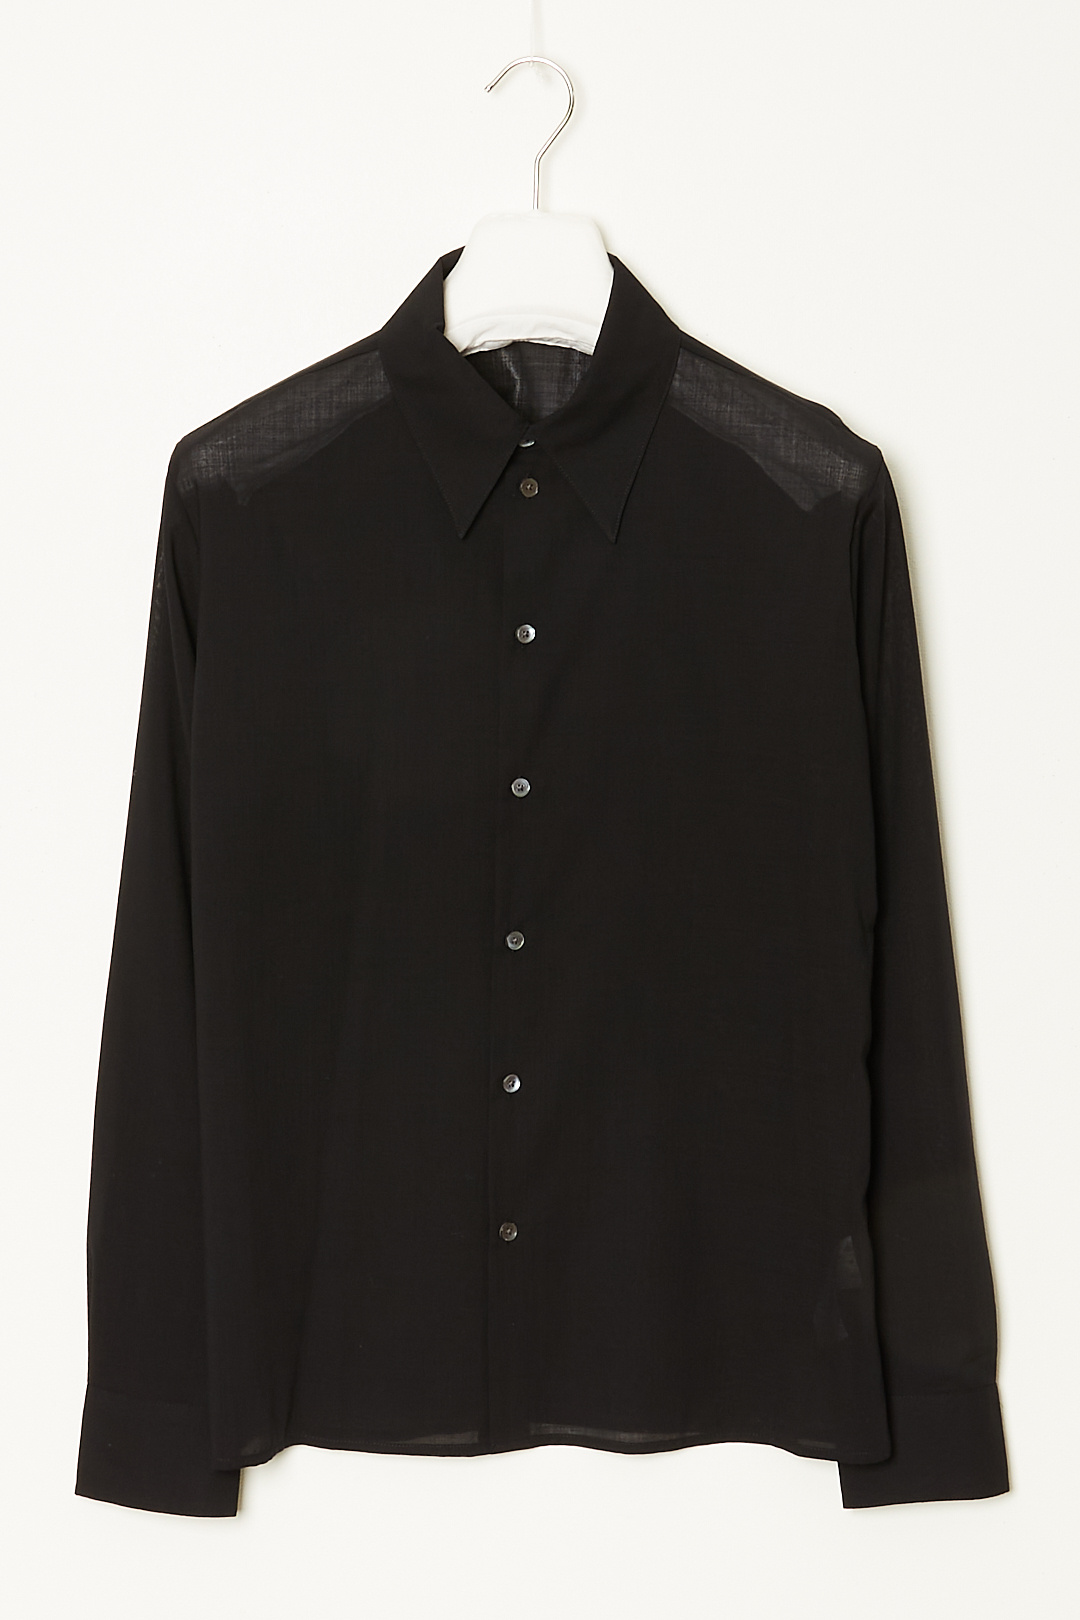 6397 - Sheer button down shirt